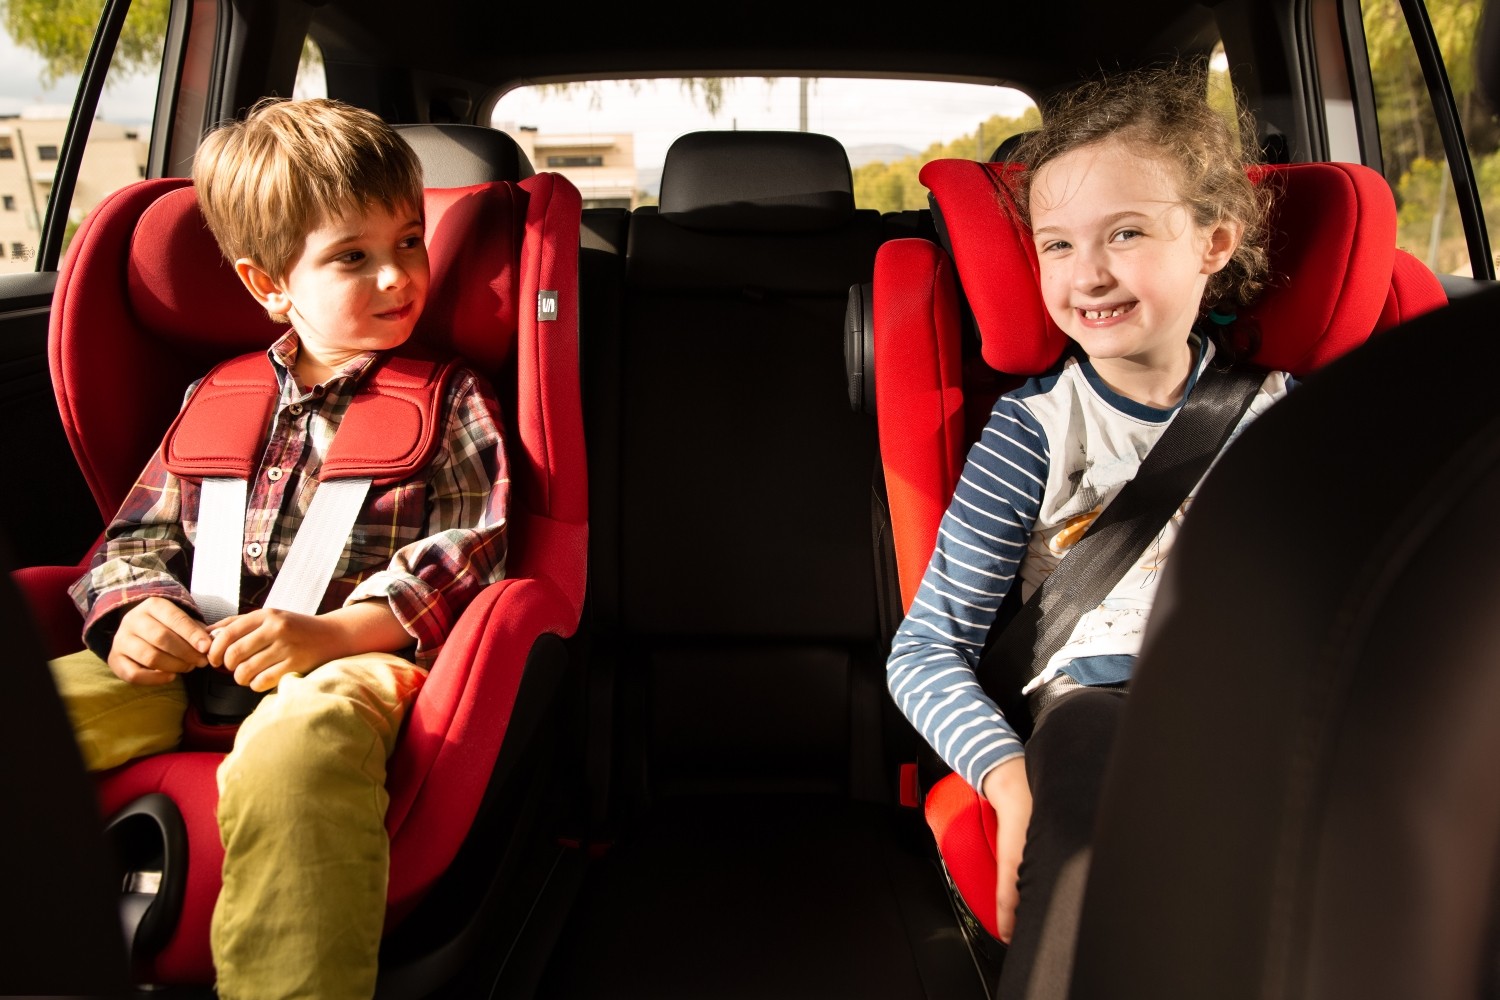 "الصحة" توضح ضوابط اختيار مقاعد الأطفال بالسيارات 2